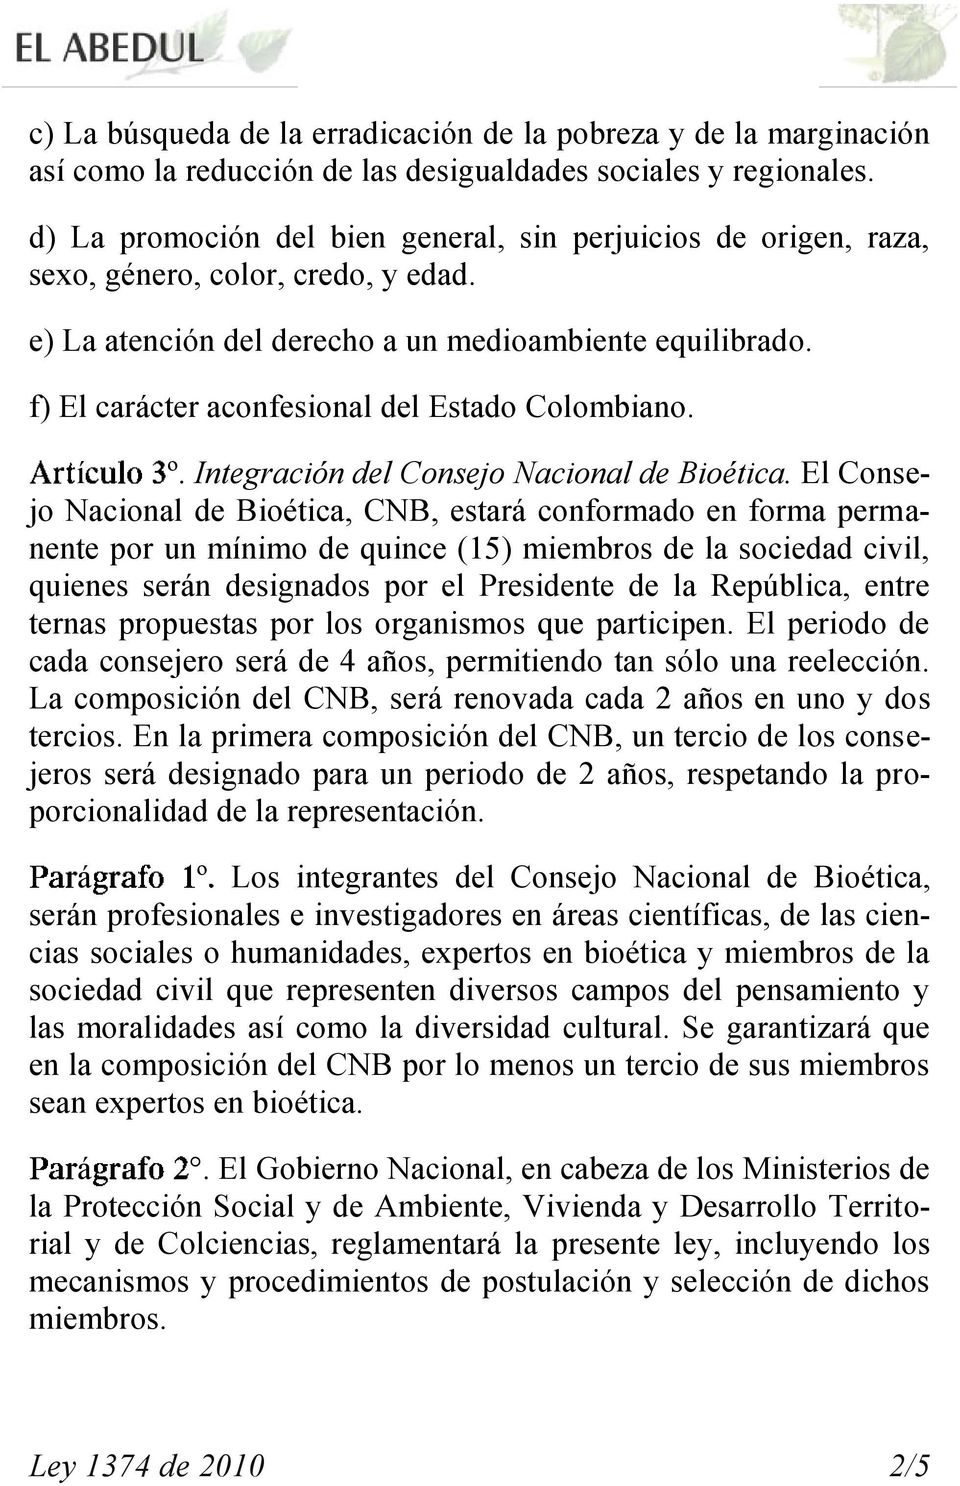 f) El carácter aconfesional del Estado Colombiano. í º. Integración del Consejo Nacional de Bioética.